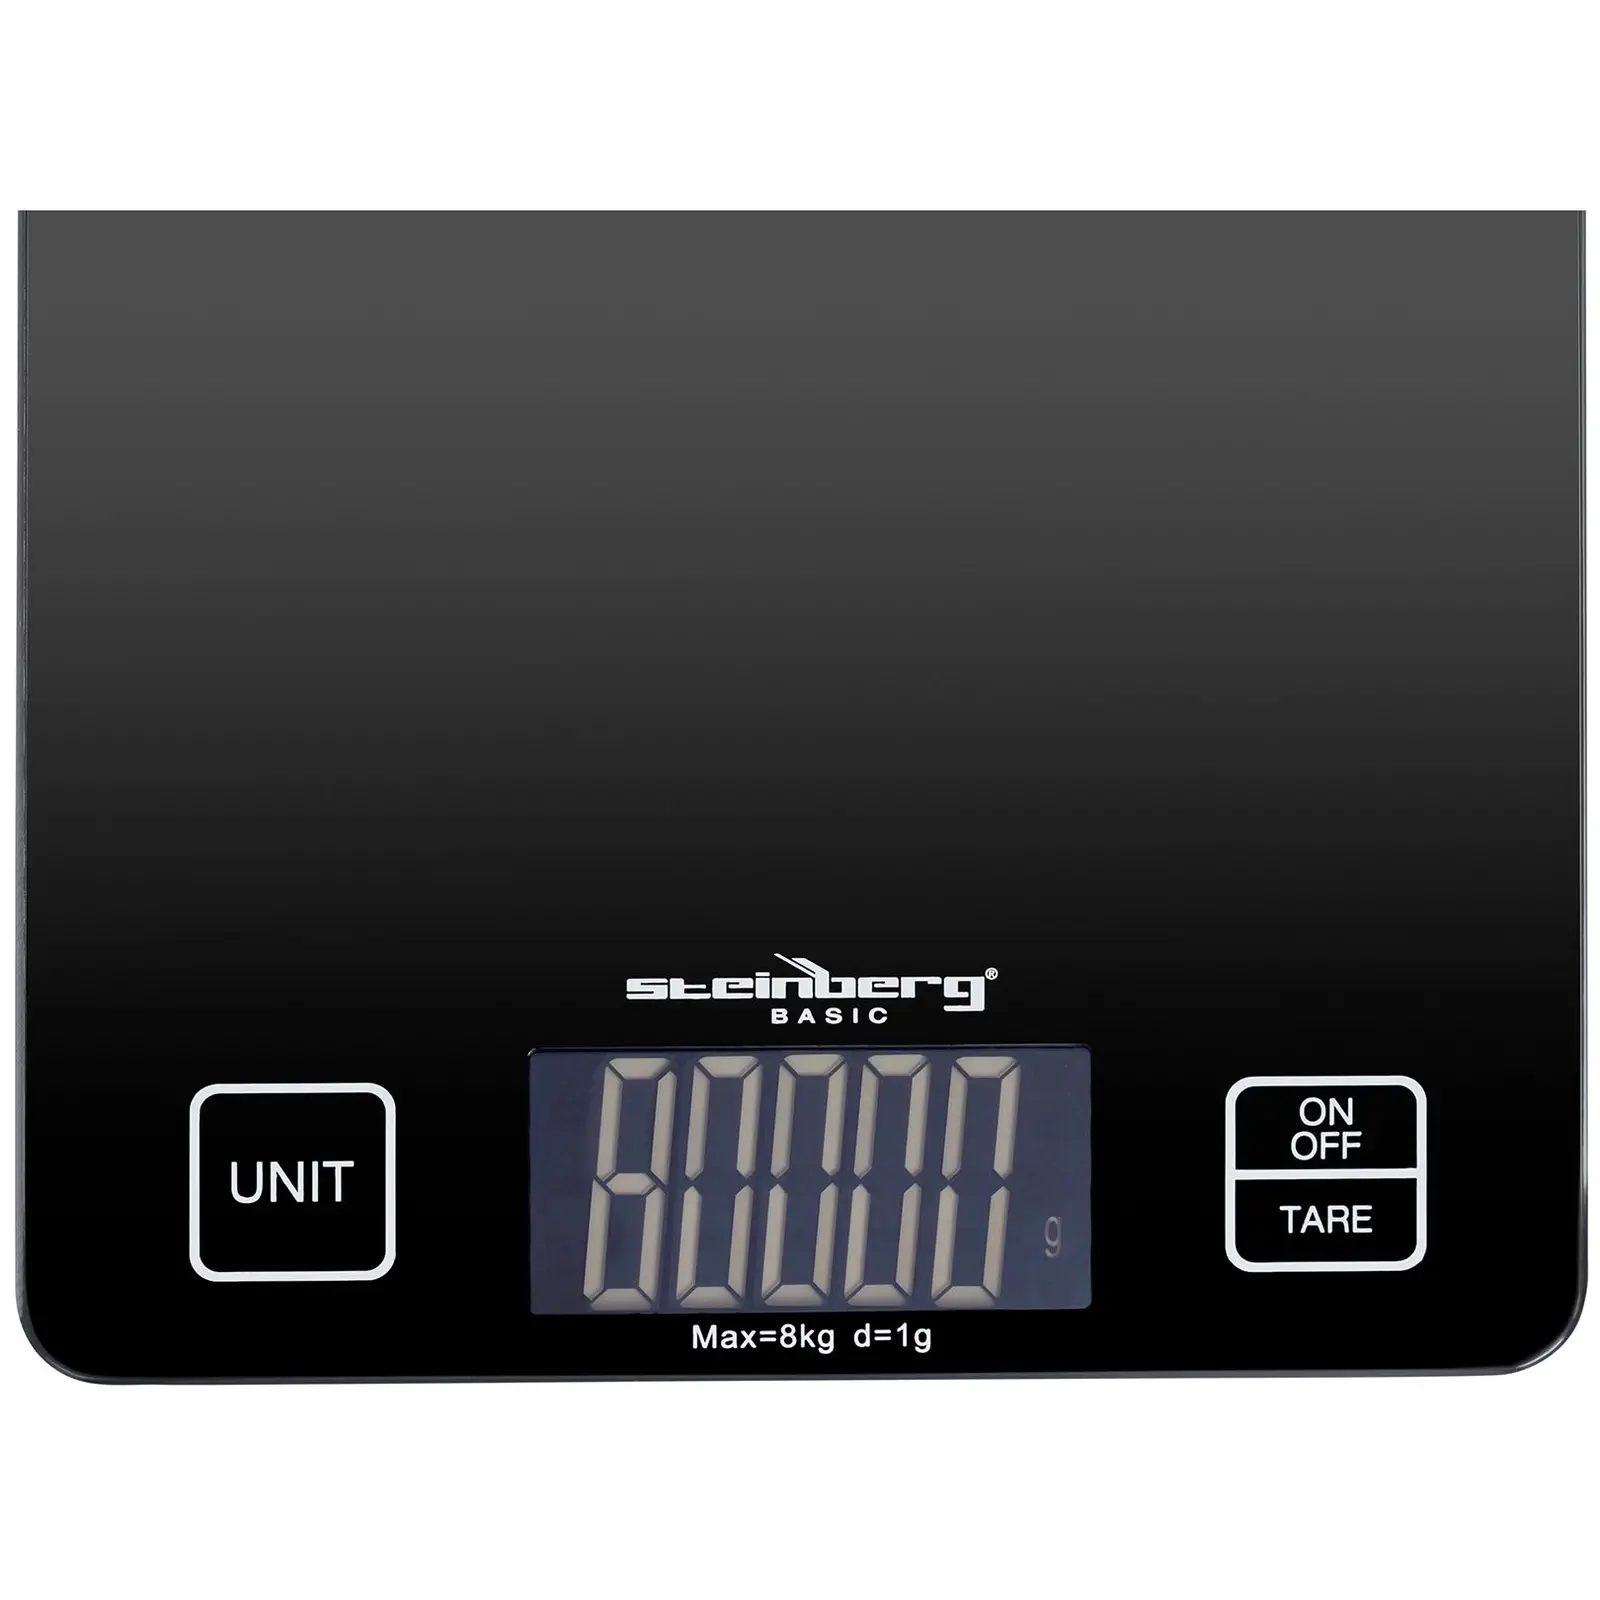 Balance de cuisine électronique - 8 kg/1 g - 22 x 17 cm - LCD